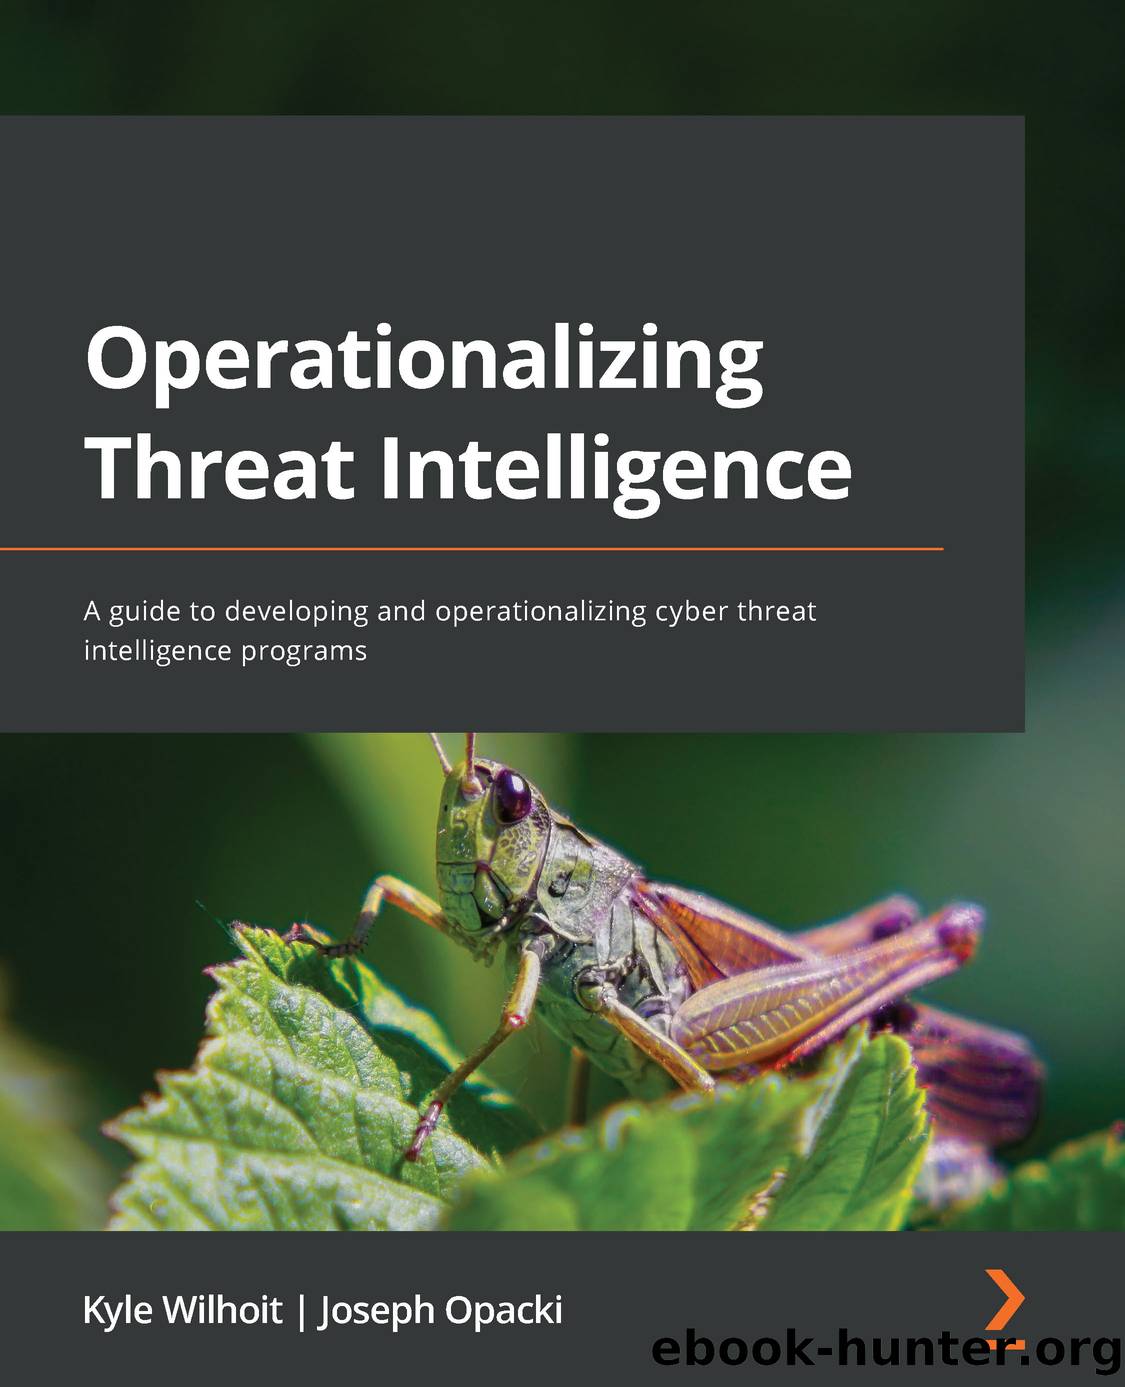 Operationalizing Threat Intelligence by Kyle Wilhoit & Joseph Opacki